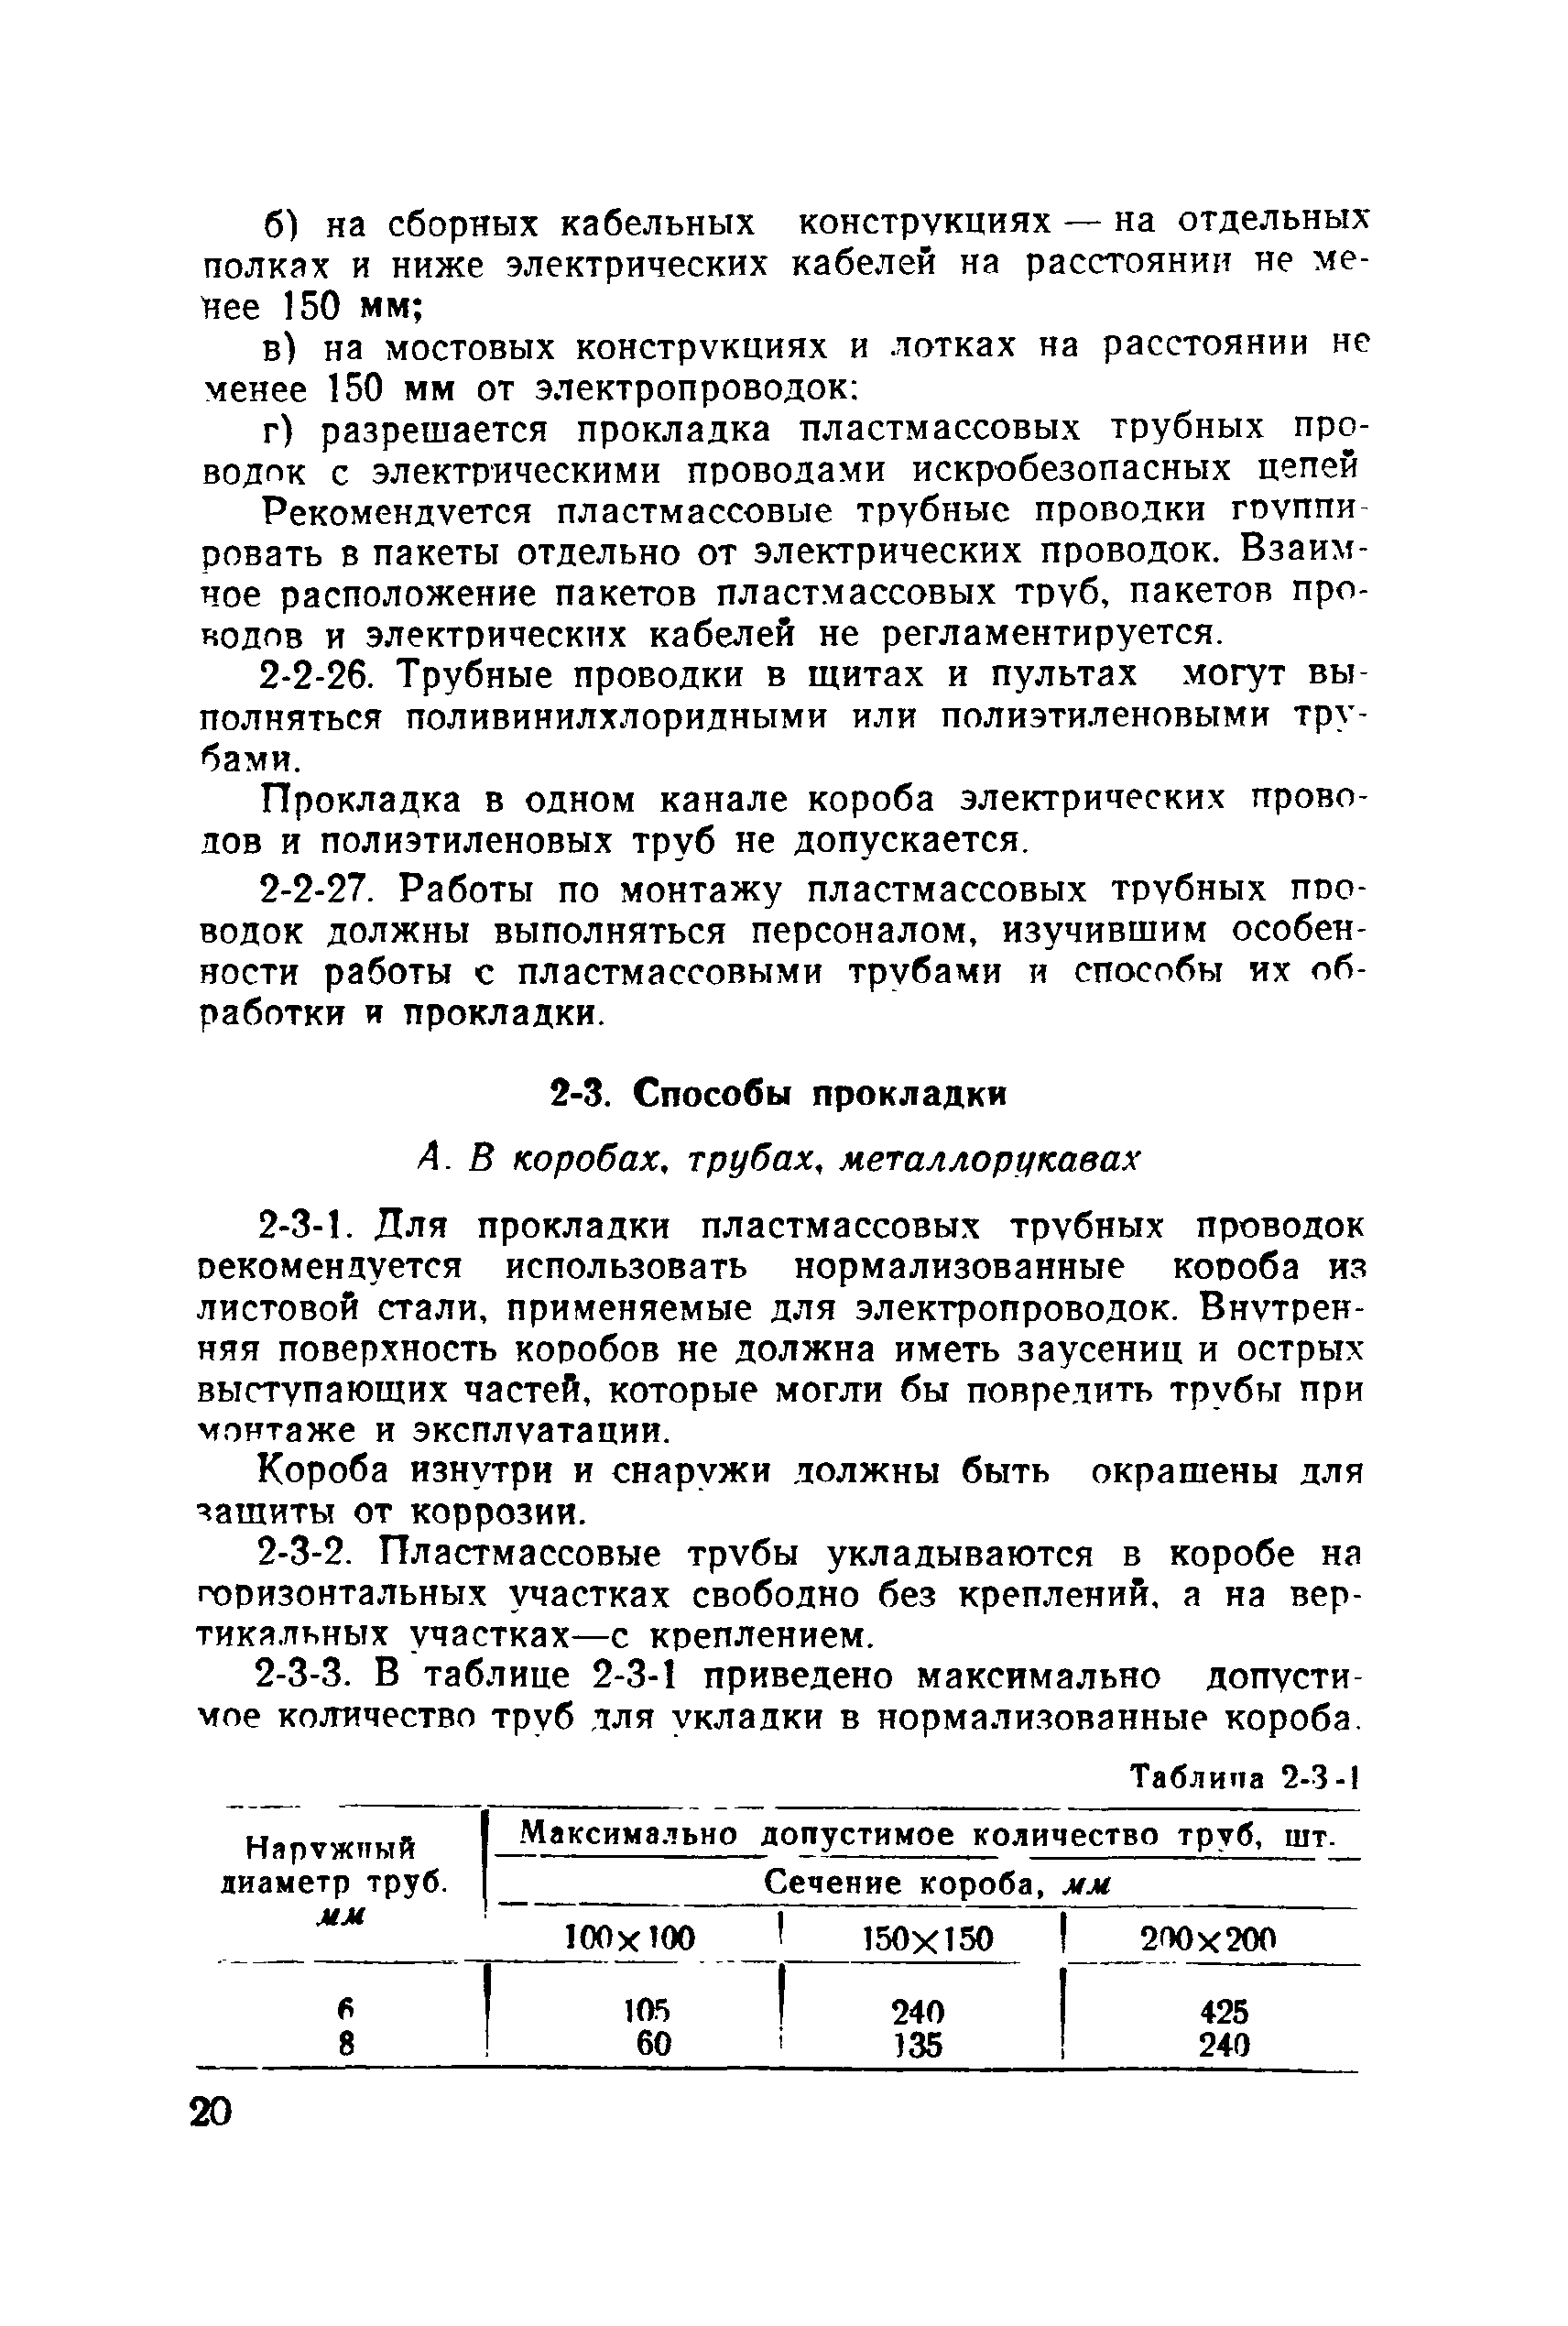 МСН 96-69/ММСС СССР